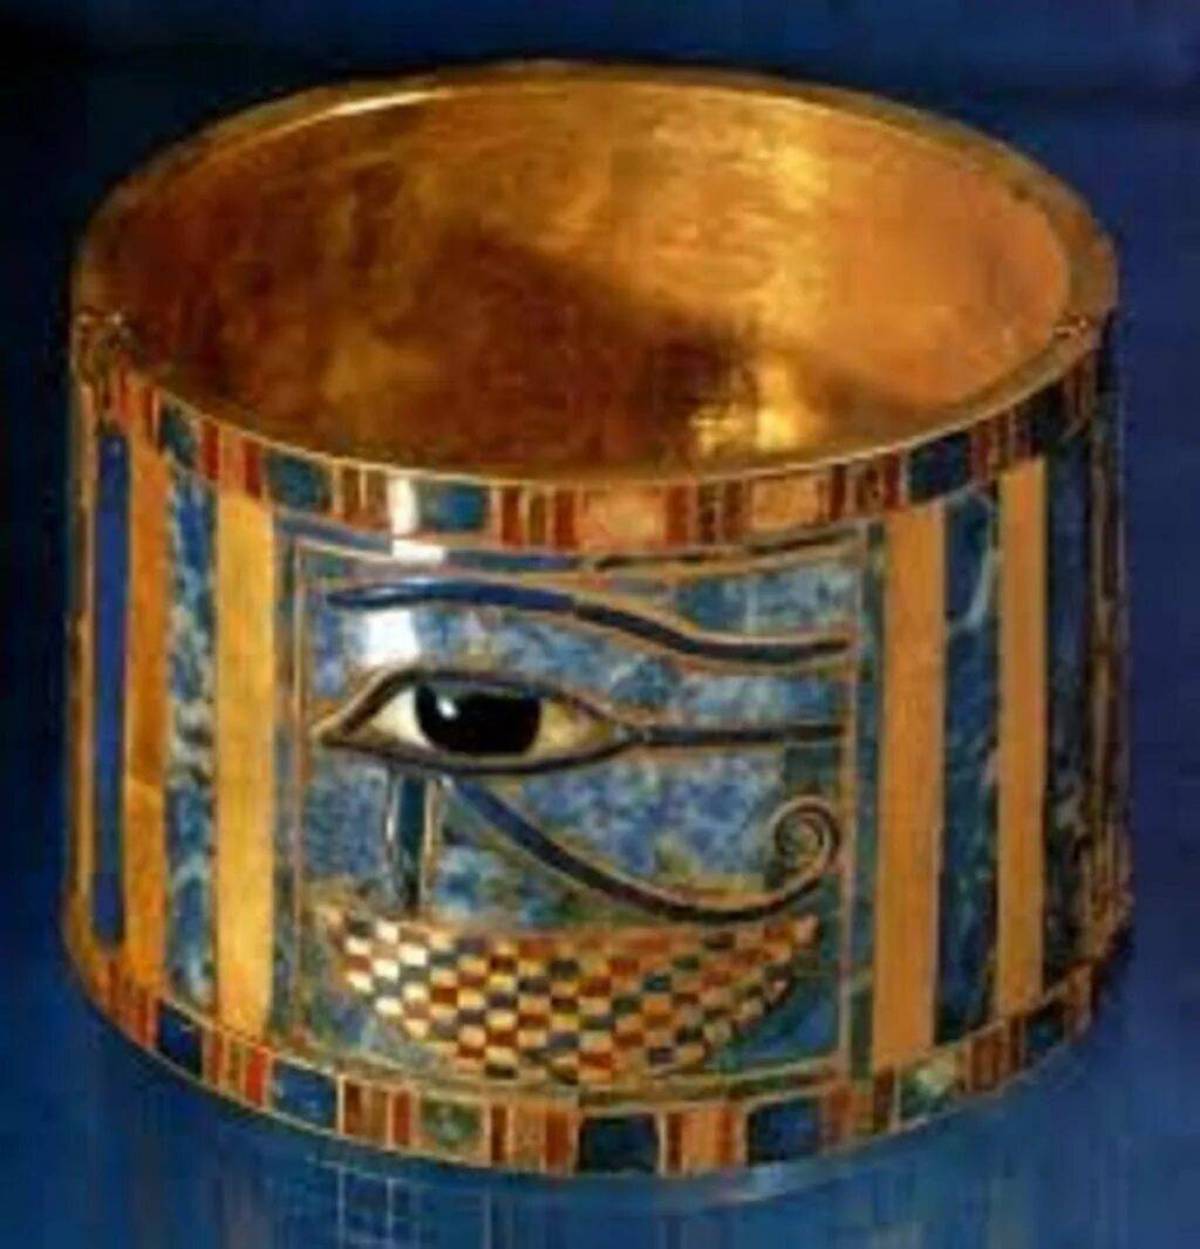 украшения древнего египта